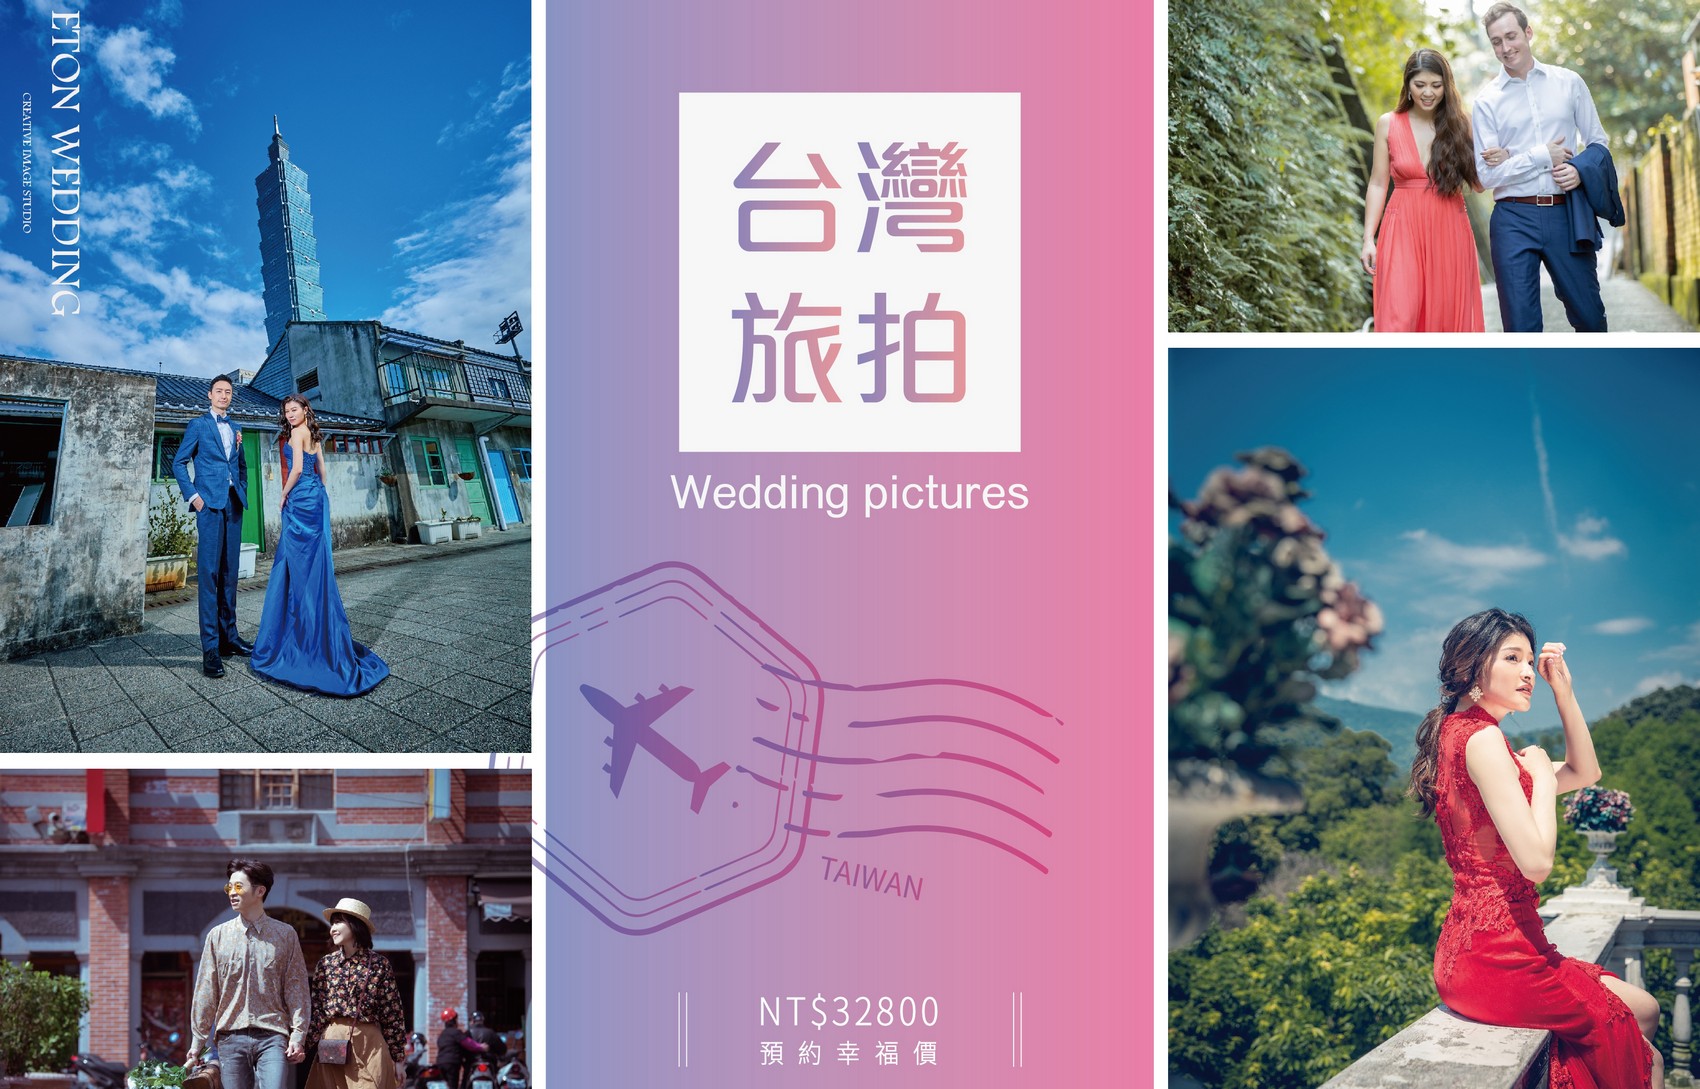 台灣 婚紗工作室,台灣 婚紗攝影價格,松山拍婚紗,松山 婚紗攝影,松山 婚紗工作室